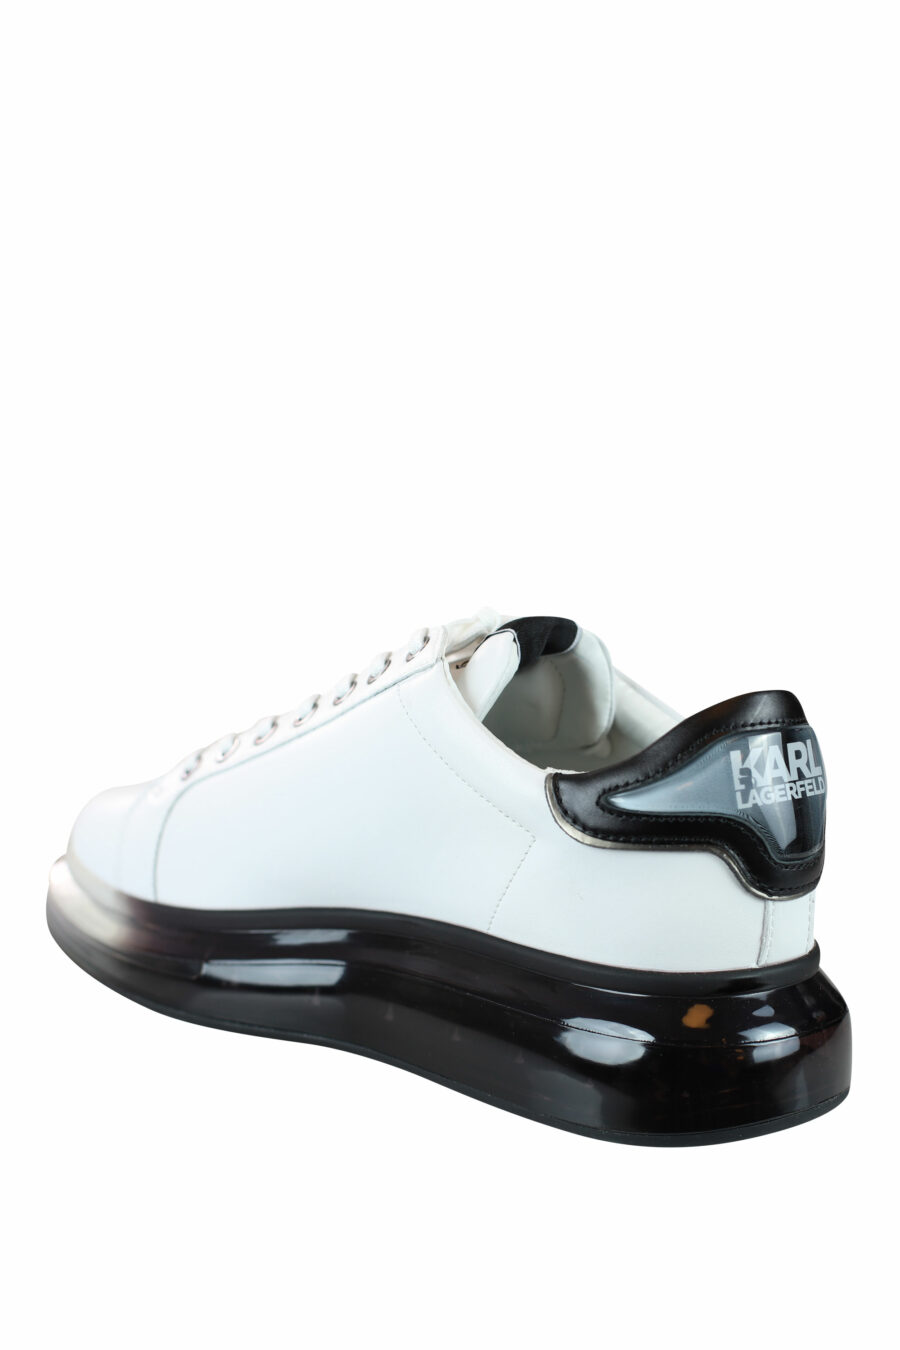 Zapatillas blancas con suela negra y logo degrade gris en silueta - IMG 0039